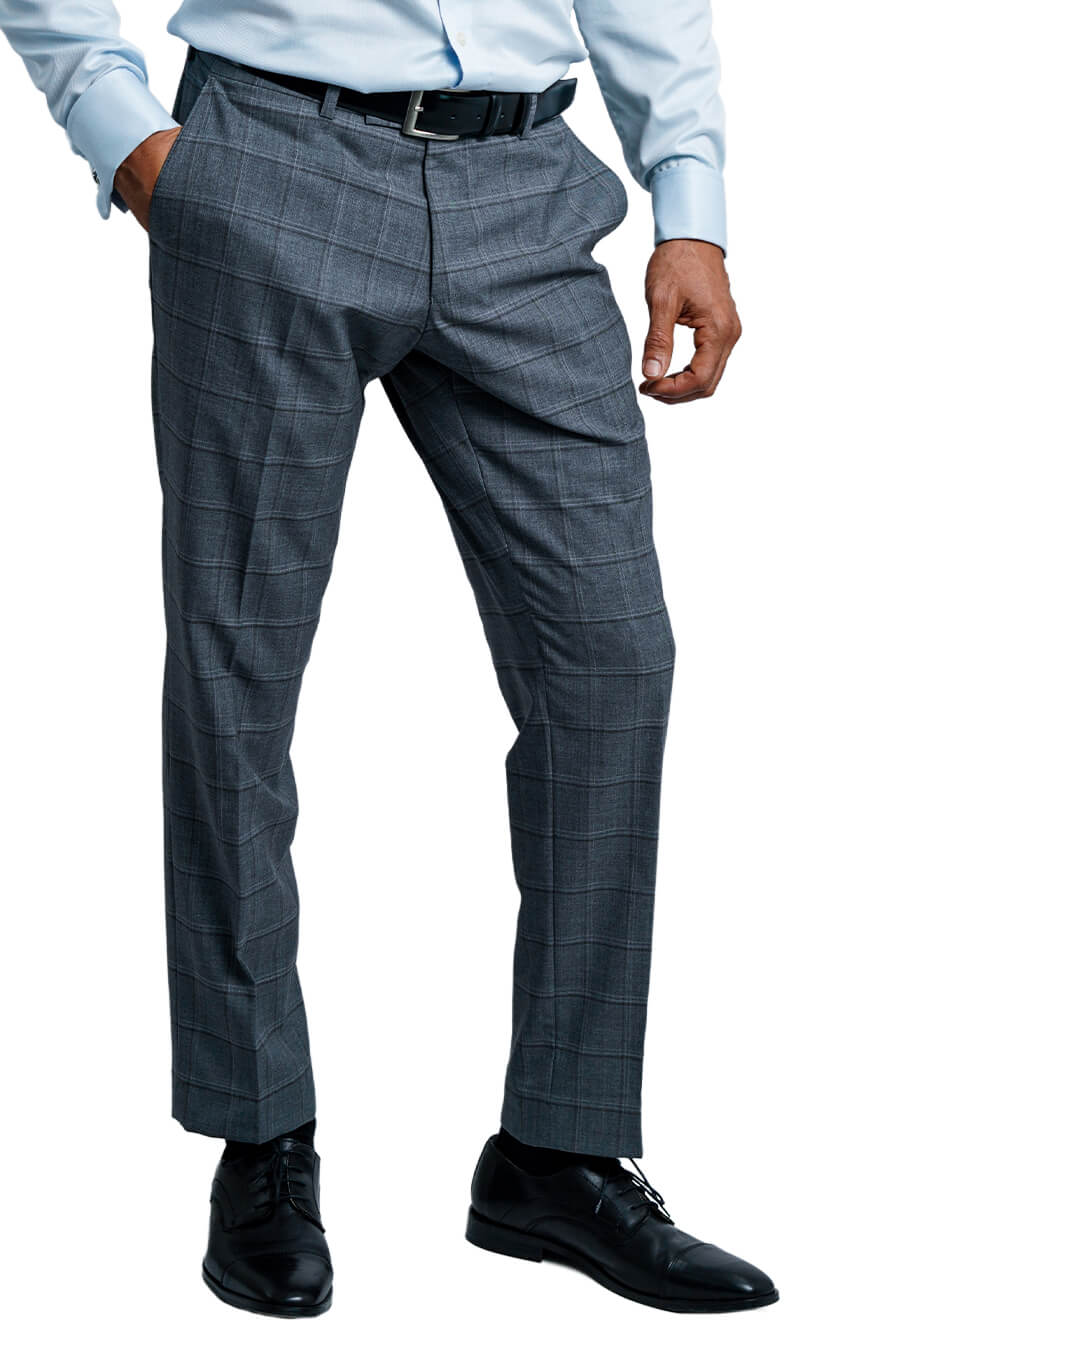 Grey Vitale Barberis Canonico Super 120s Check Suit